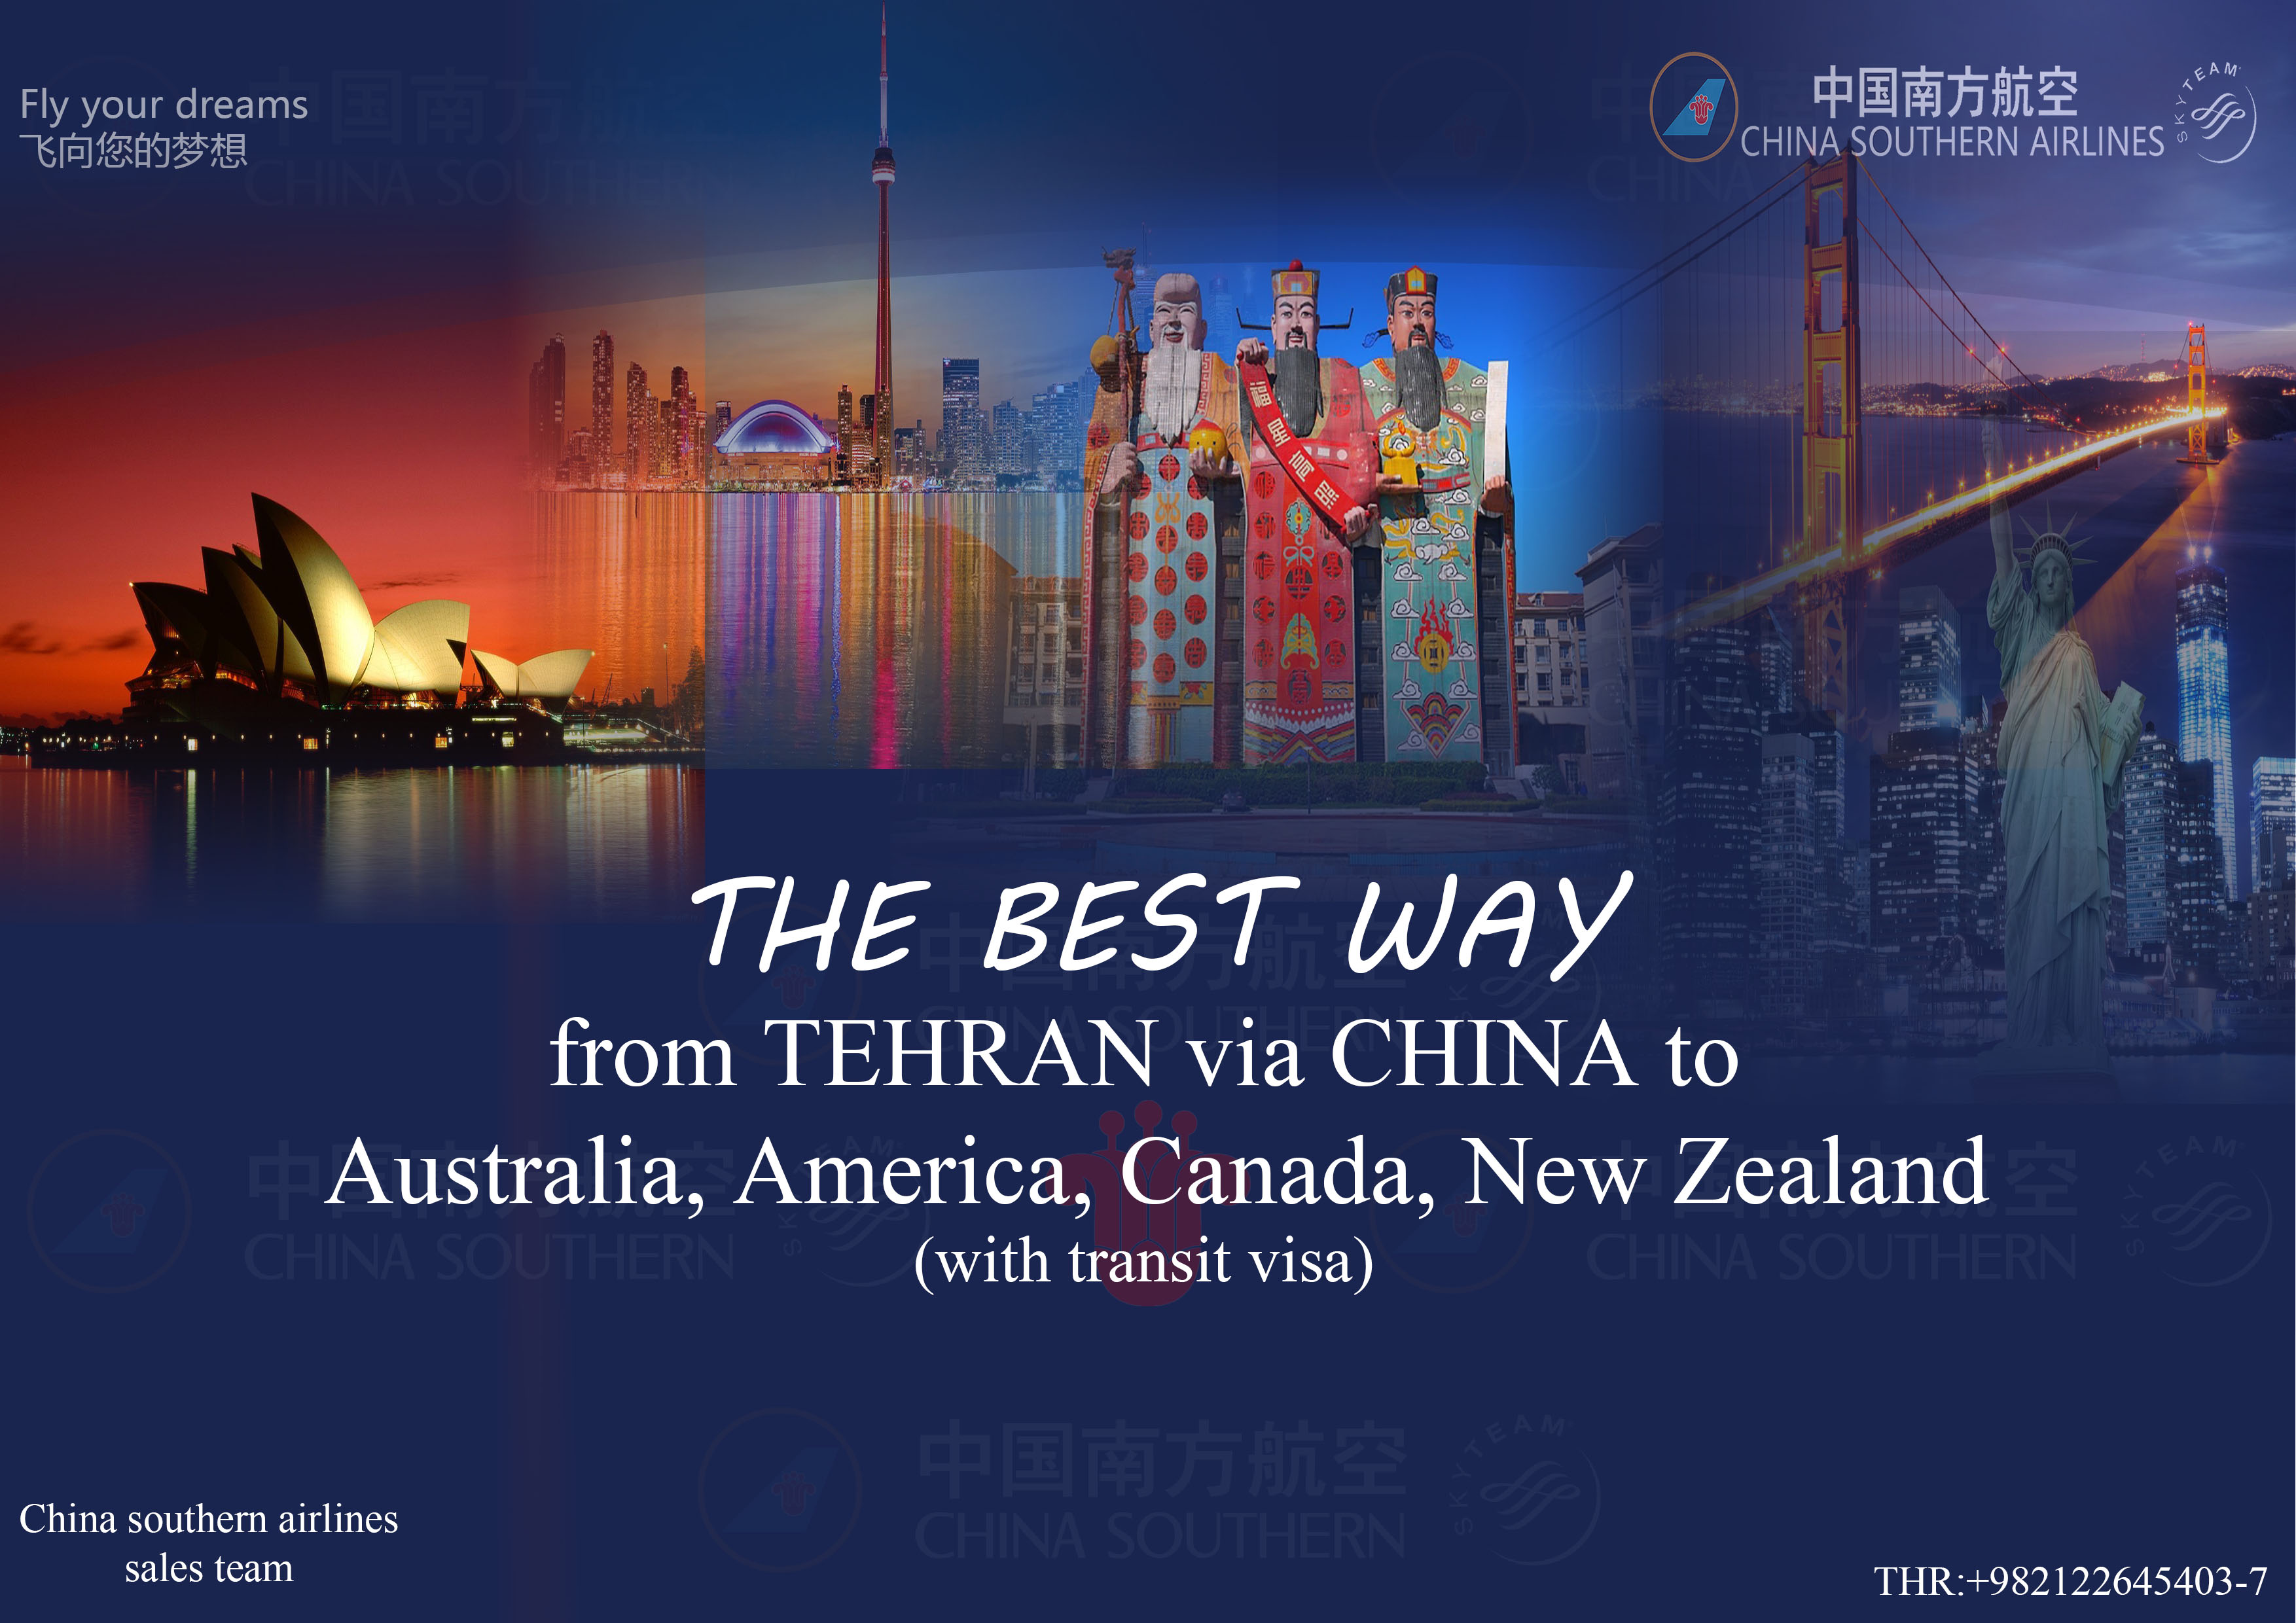 بخشنامه و اطلاعیه   هواپیمایی چاینا ساترن درباره نرخ های ویژه از تهران به استرالیا آمریکا کانادا نیوزلند